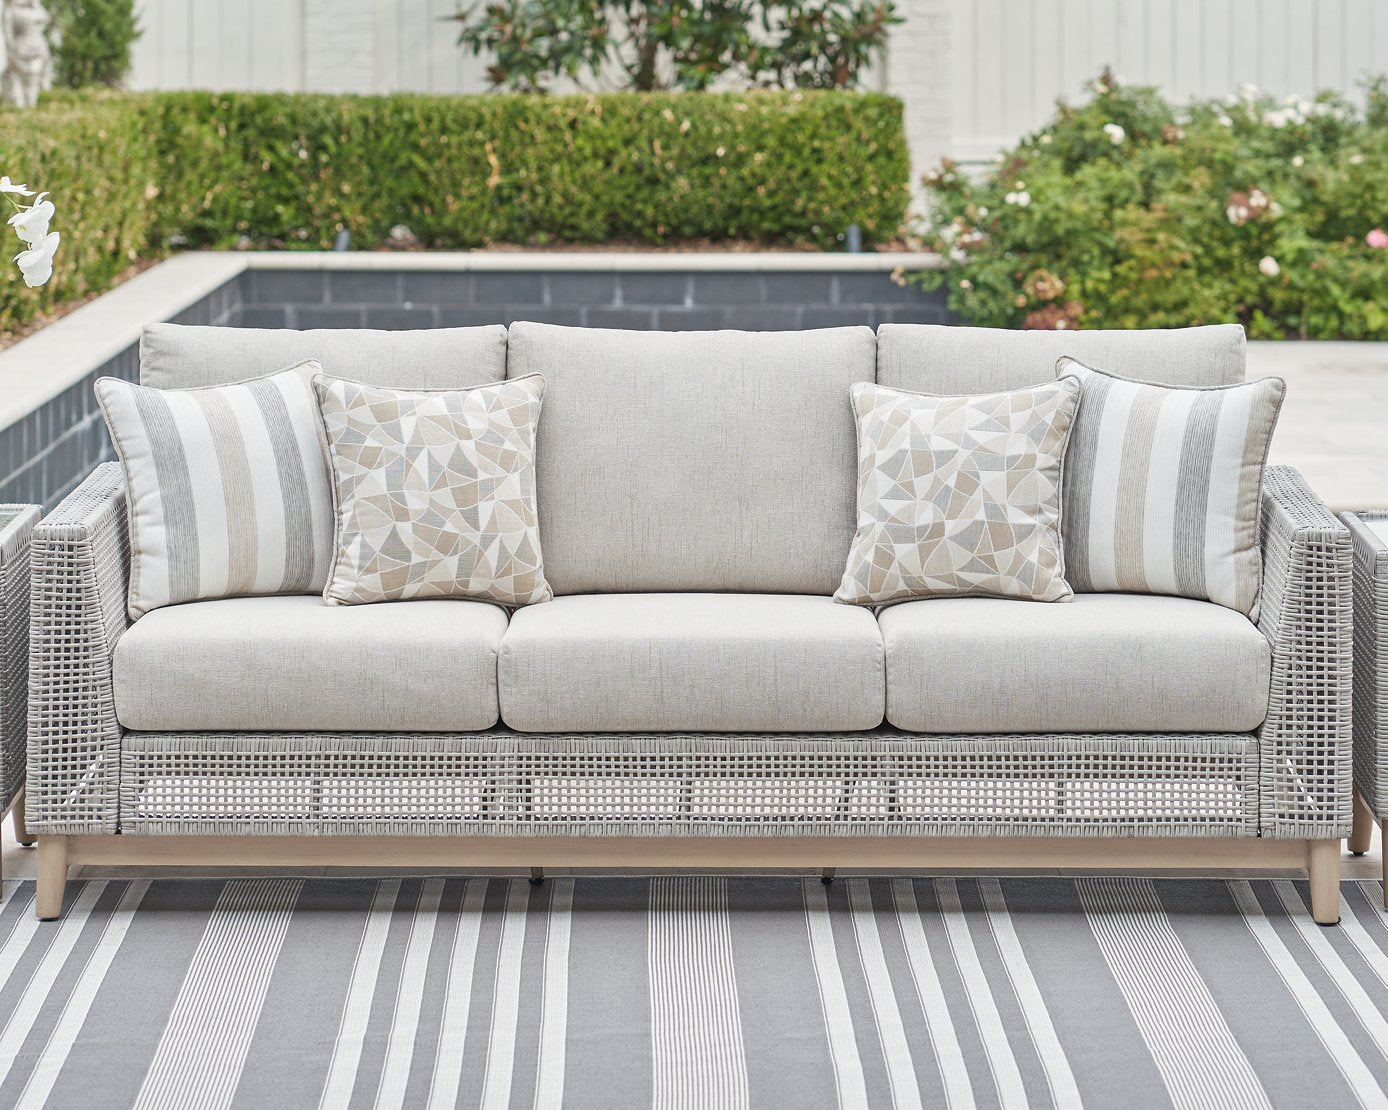 Seton Creek Outdoor Sofa with Cushion - Romeo & Juliet Furniture (Warren,MI)